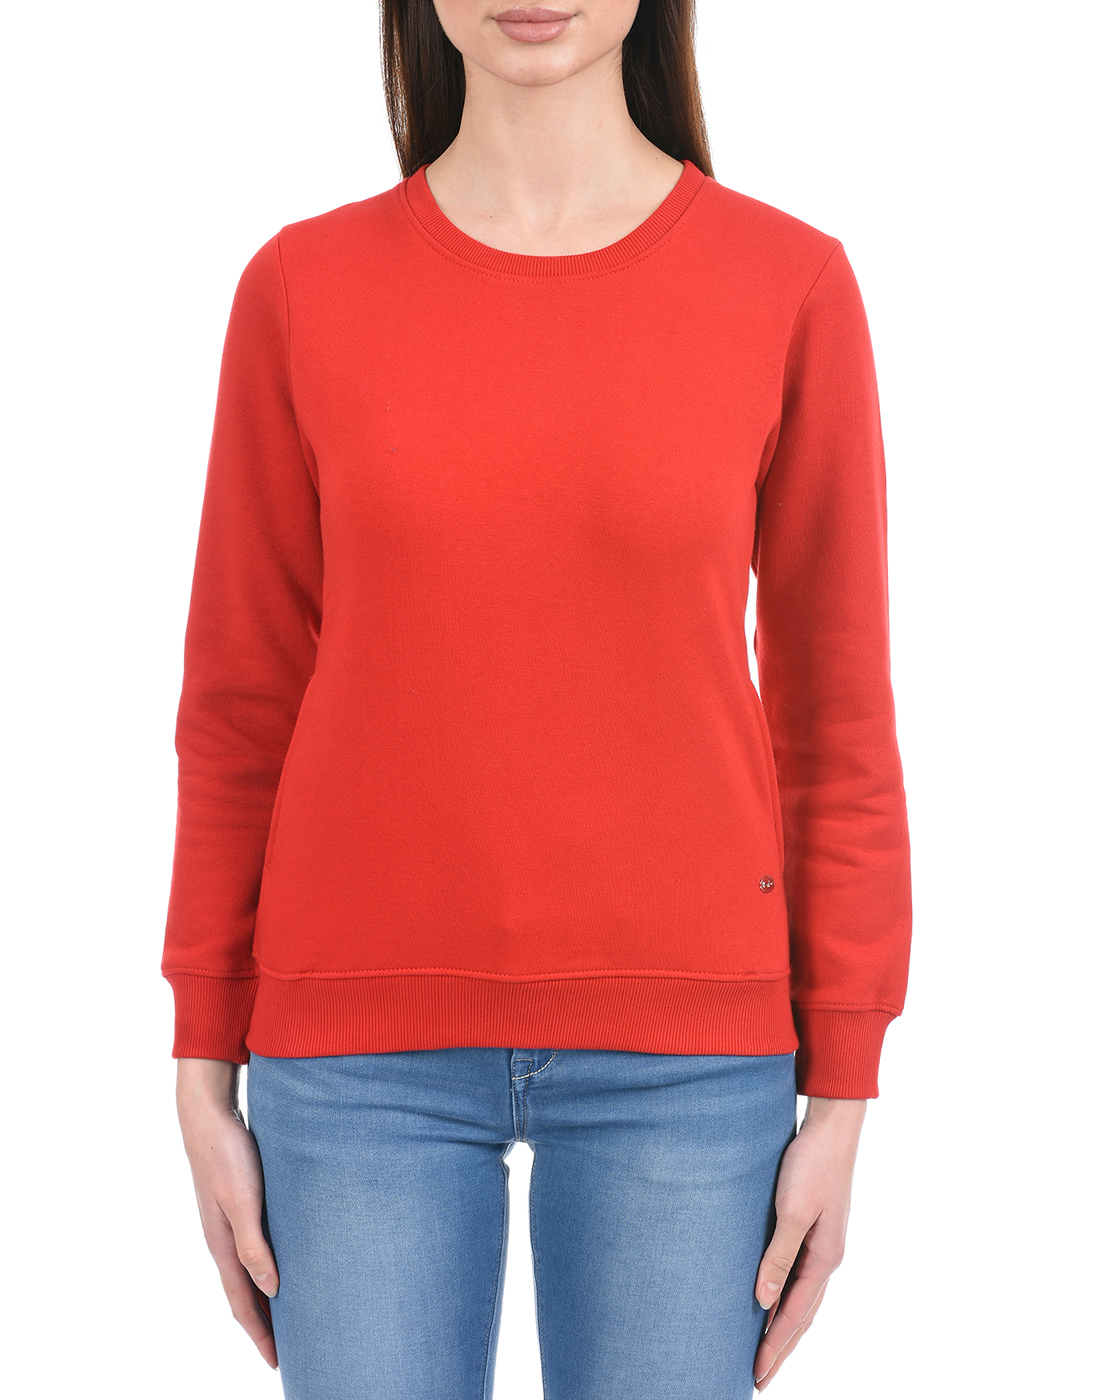 Cloak & Decker by Monte Carlo Women Red Sweat Shirt